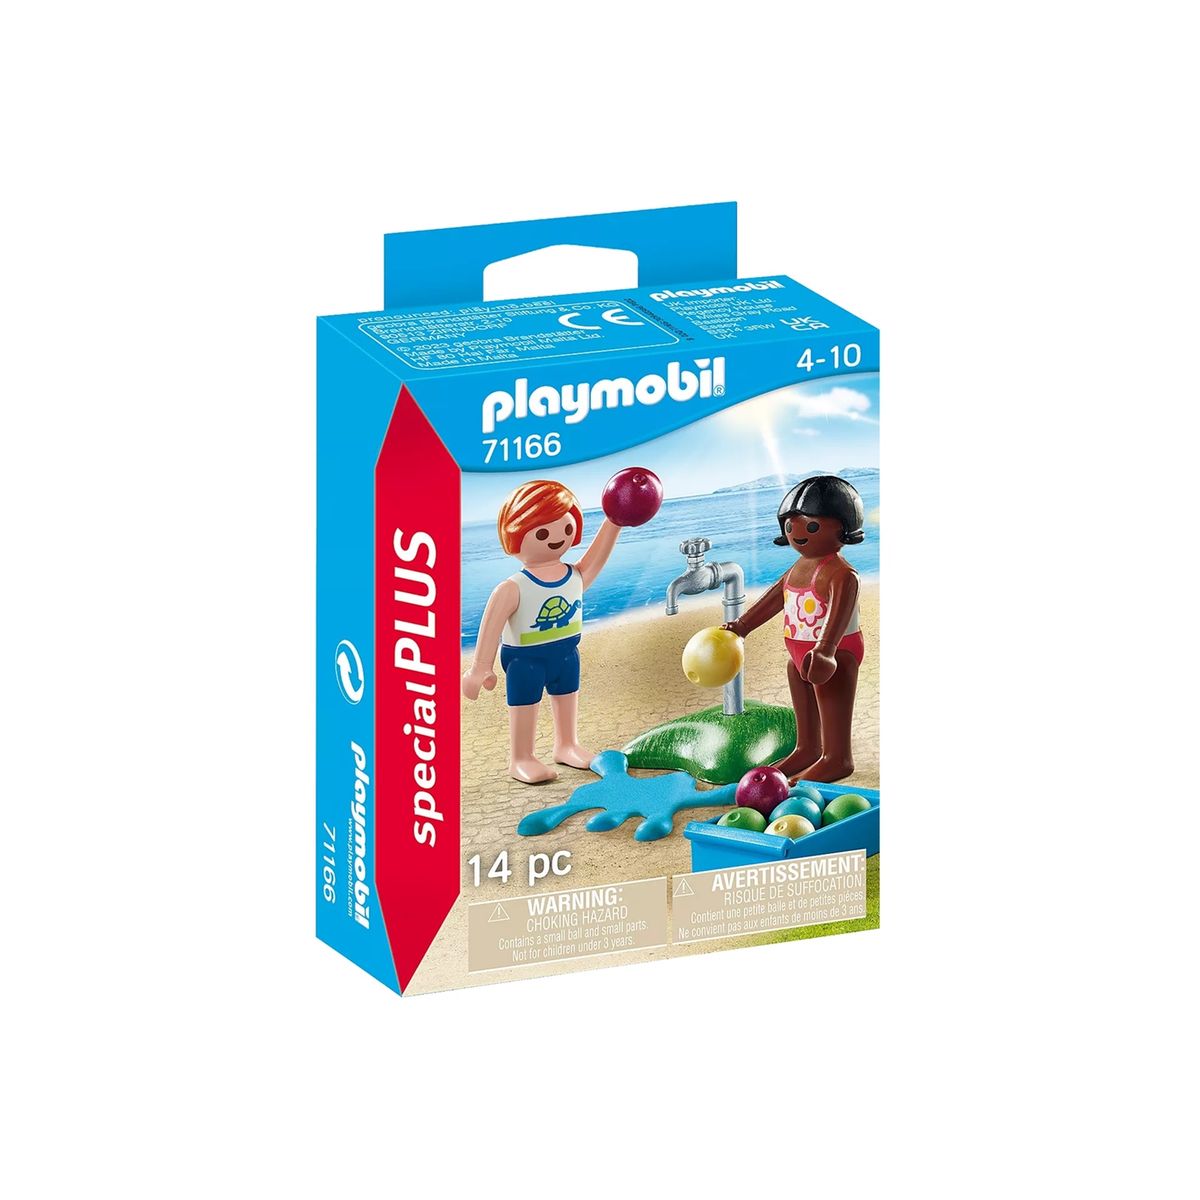 Playmobil pour fille - Idées et achat Notre univers Playmobil